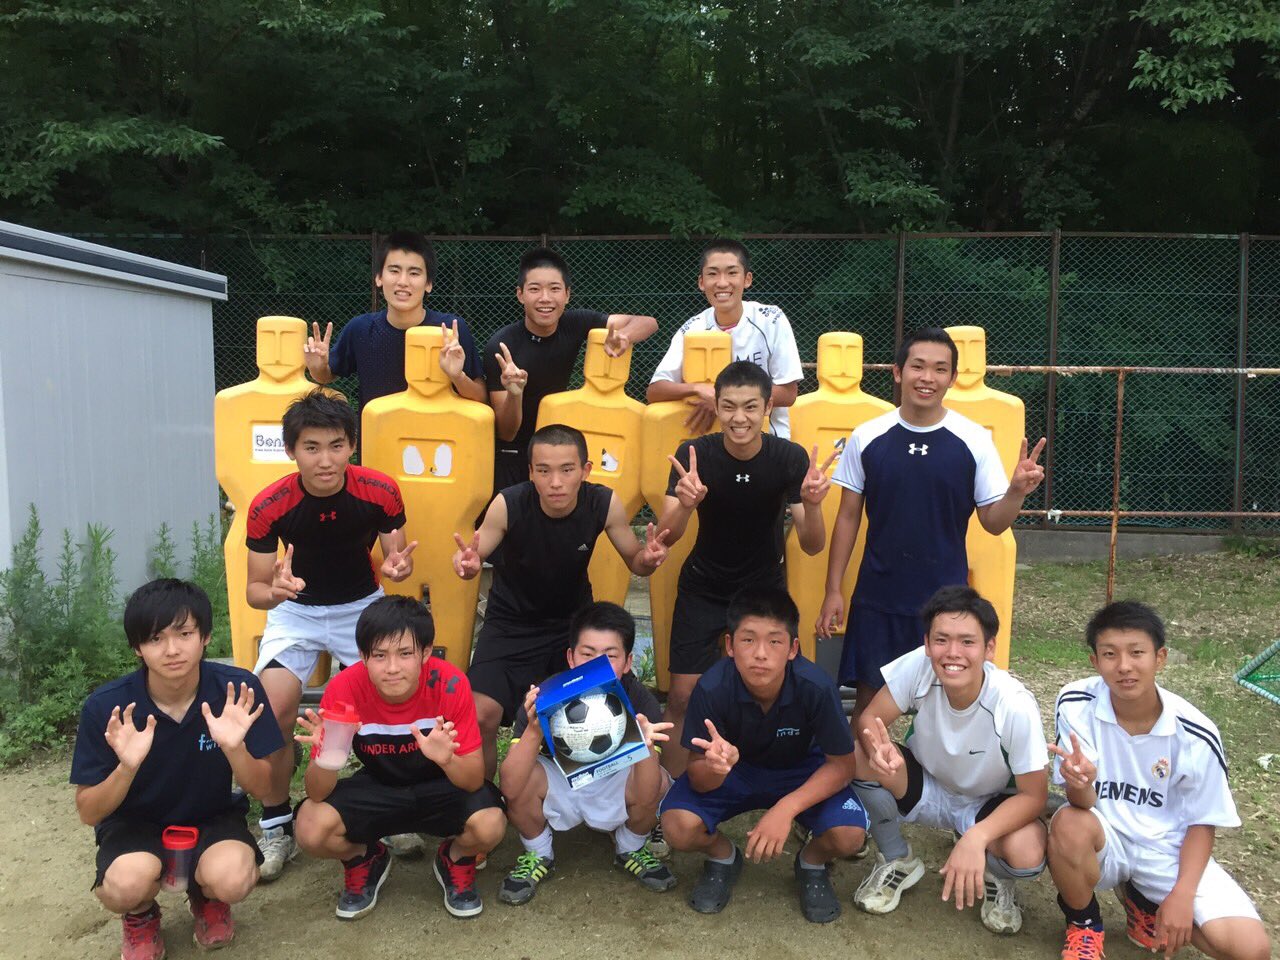 Tomoki Twitterren 湯本高校サッカー部に入って すごい先輩たちや良い後輩 先生たちに出会って一緒にサッカーできてほんとに良かったです そしてなによりも3年間一緒に頑張って最後までやりきった13人 ほんとにみんなのおかげでここまで頑張れ